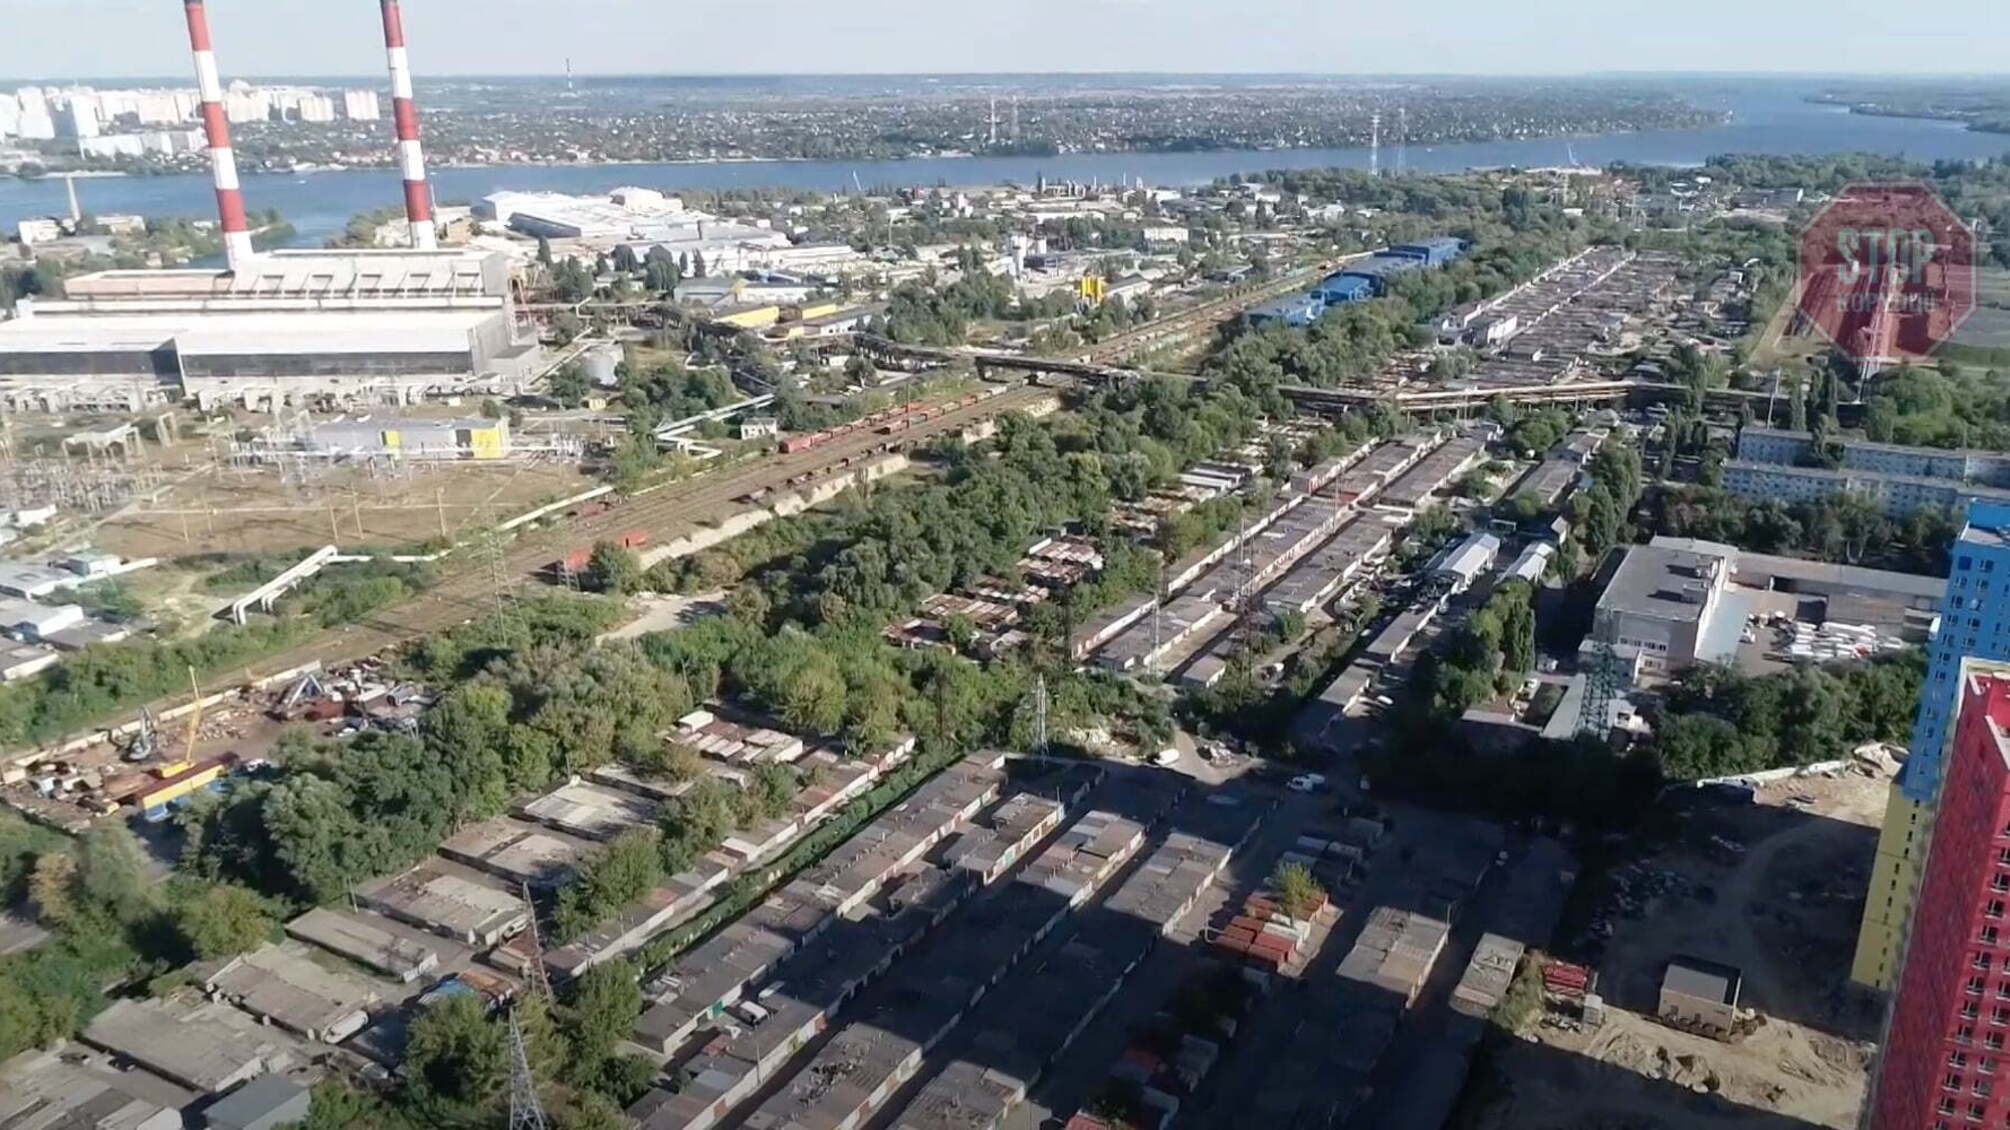 Між автострадою й заводом: у Києві житловий квартал будують посеред промзони